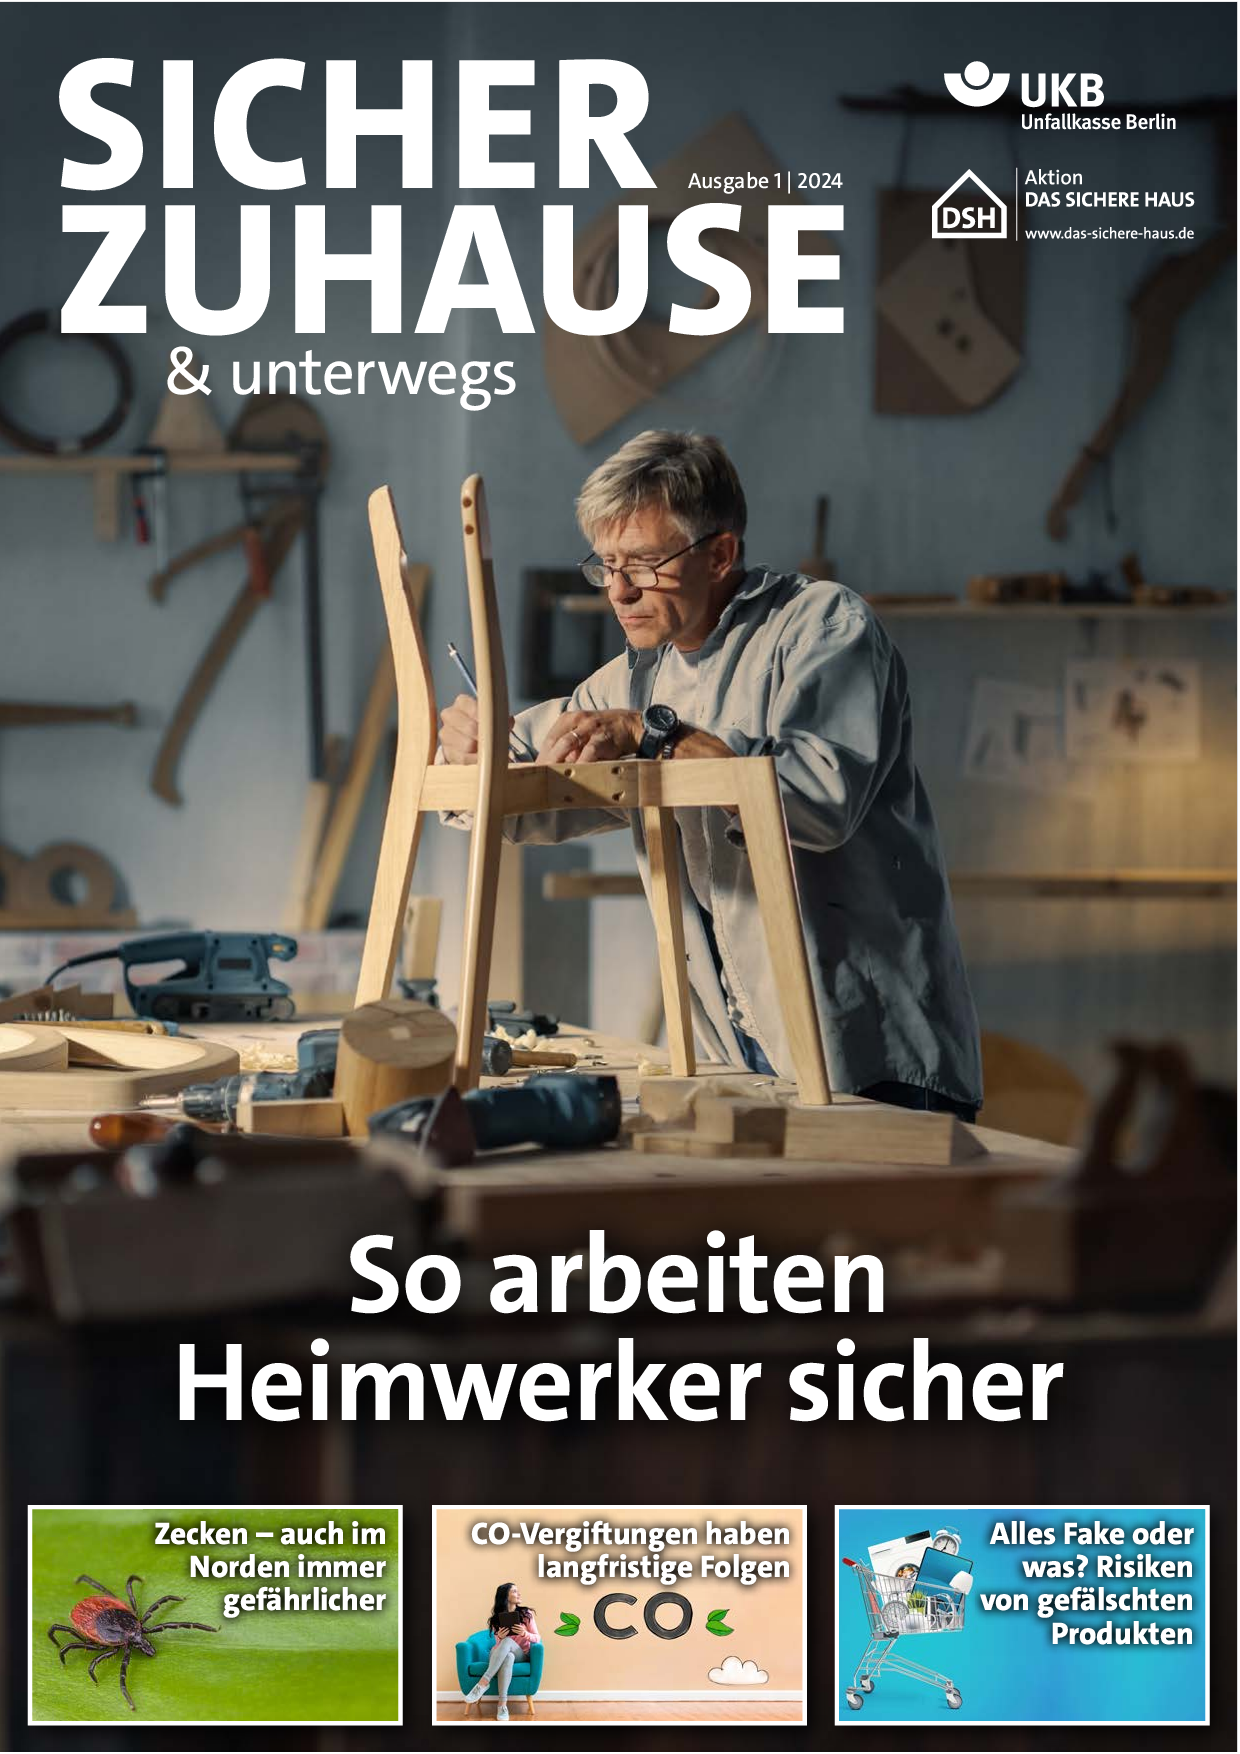 Titelbild des Magazins "Sicher zuhause und unterwegs", Ausgabe 1/2024. Motiv: Ein Heimwerker arbeitet in seiner Werkstatt an einem Stuhl.